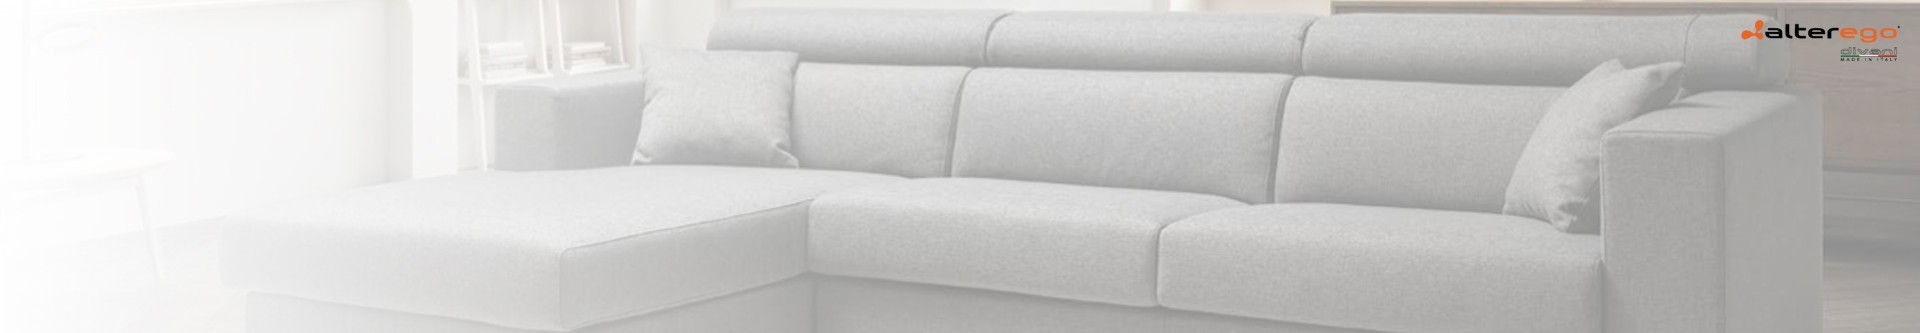 Canapés convertibles Alterego Divani : Votre canapé-lit au meilleur prix - LMDL